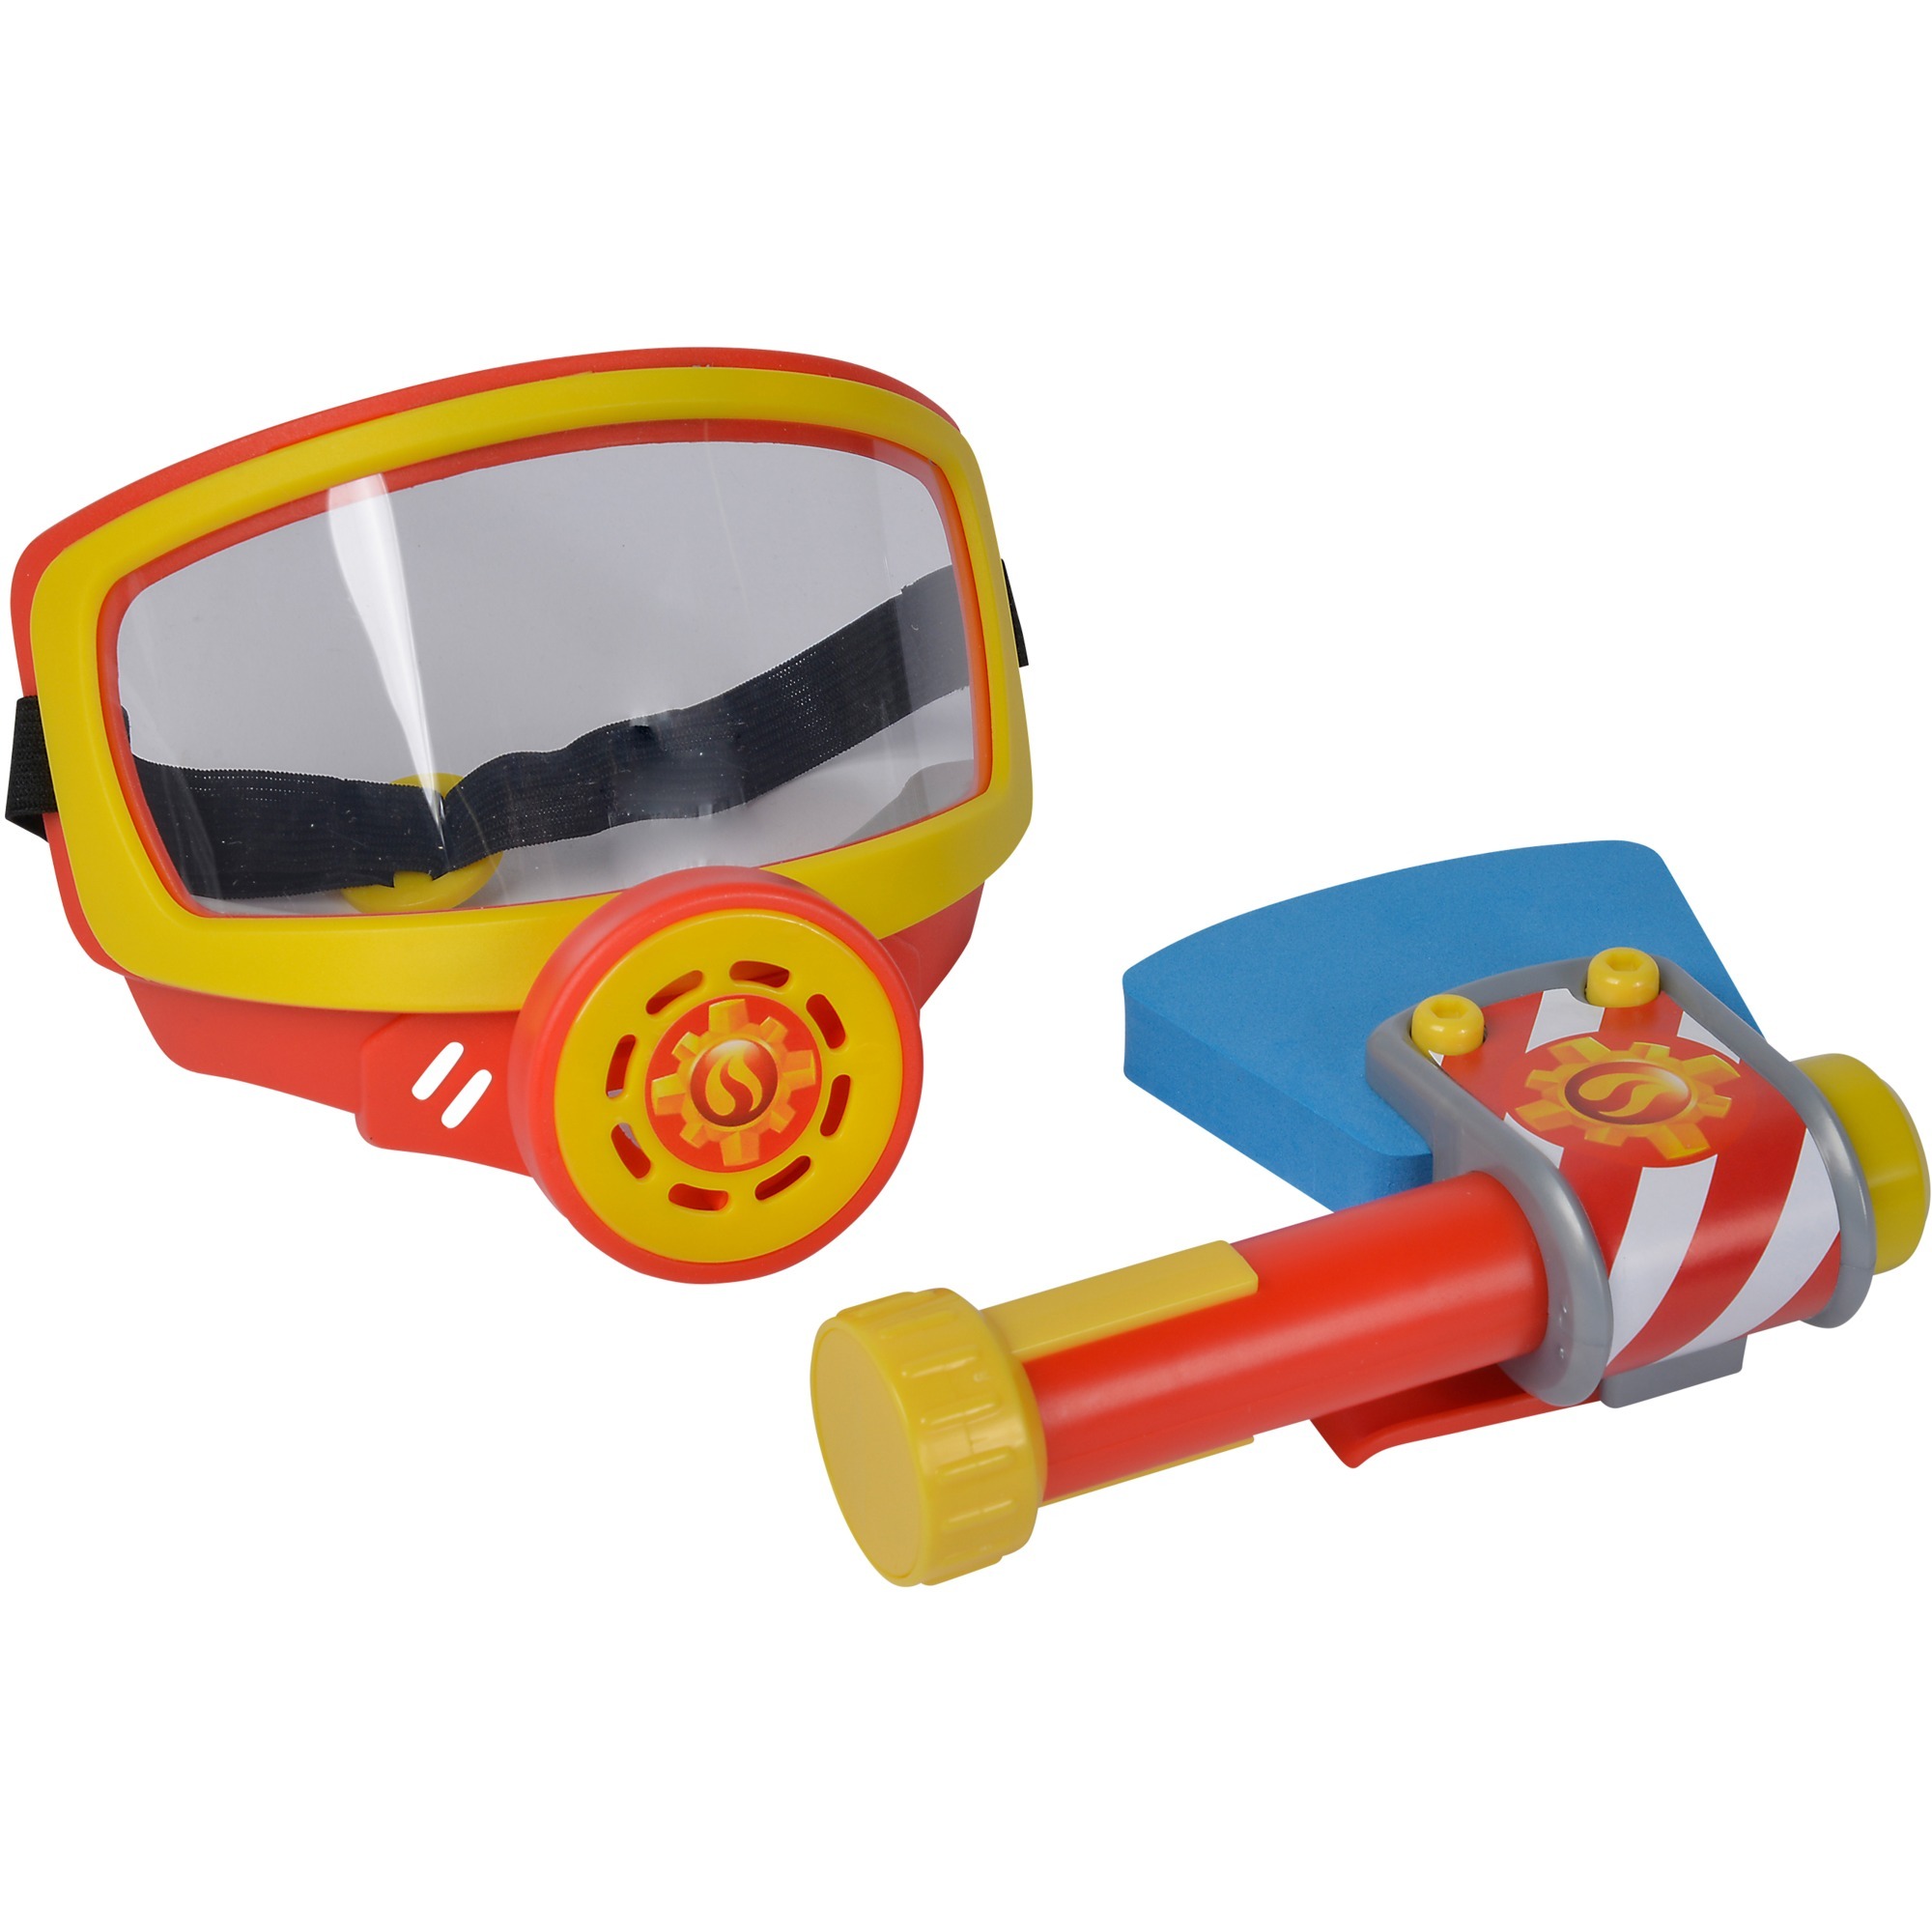 Image of Alternate - Feuerwehrmann Sam Feuerwehr Sauerstoffmaske, Rollenspiel online einkaufen bei Alternate